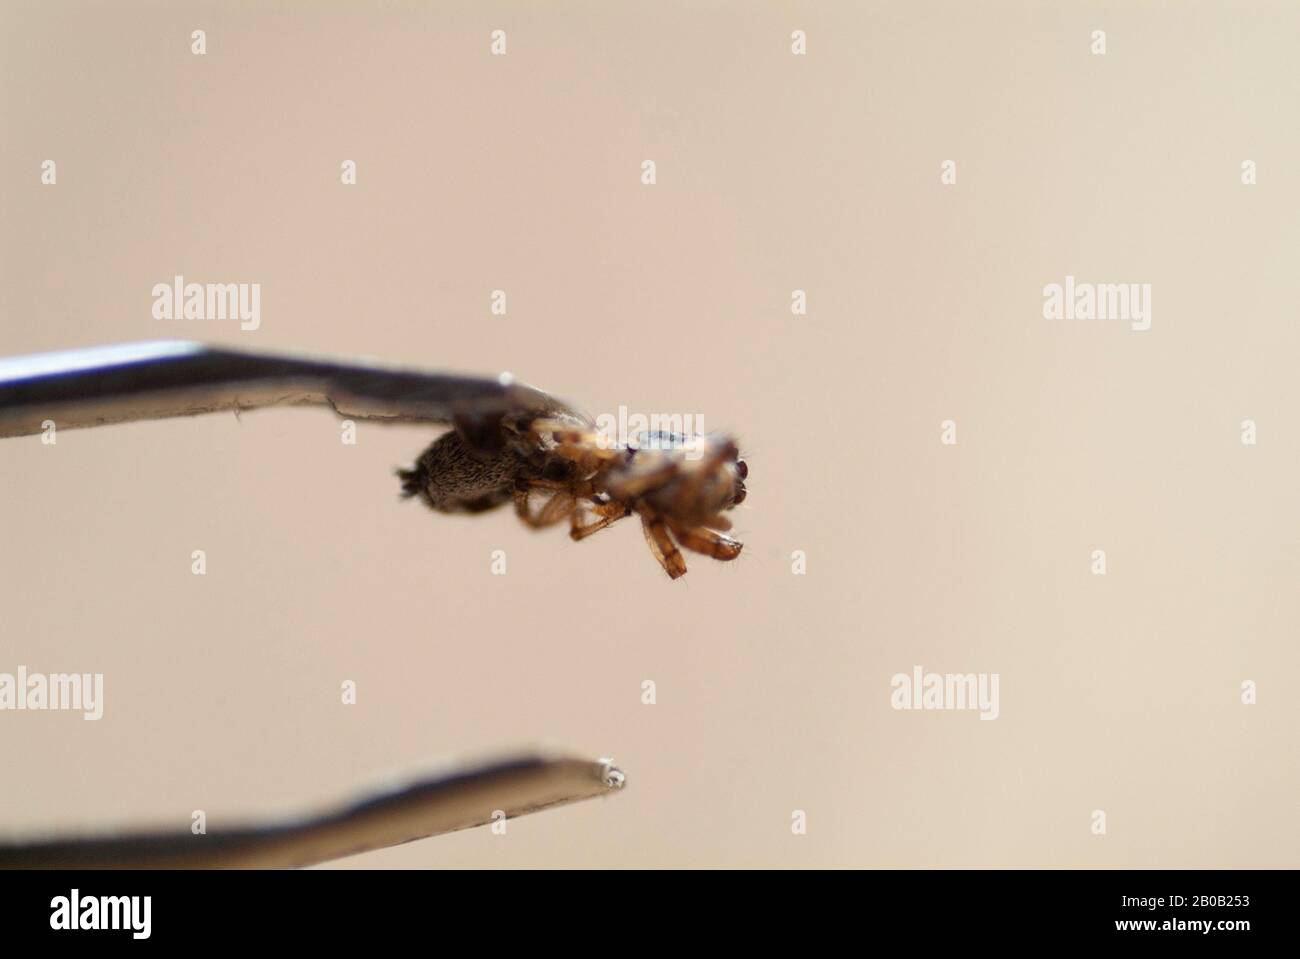 AUTOPSIE ARACHNID: Eine gründliche Untersuchung und Erforschung eines toten Körpers einer Spinnen Stockfoto